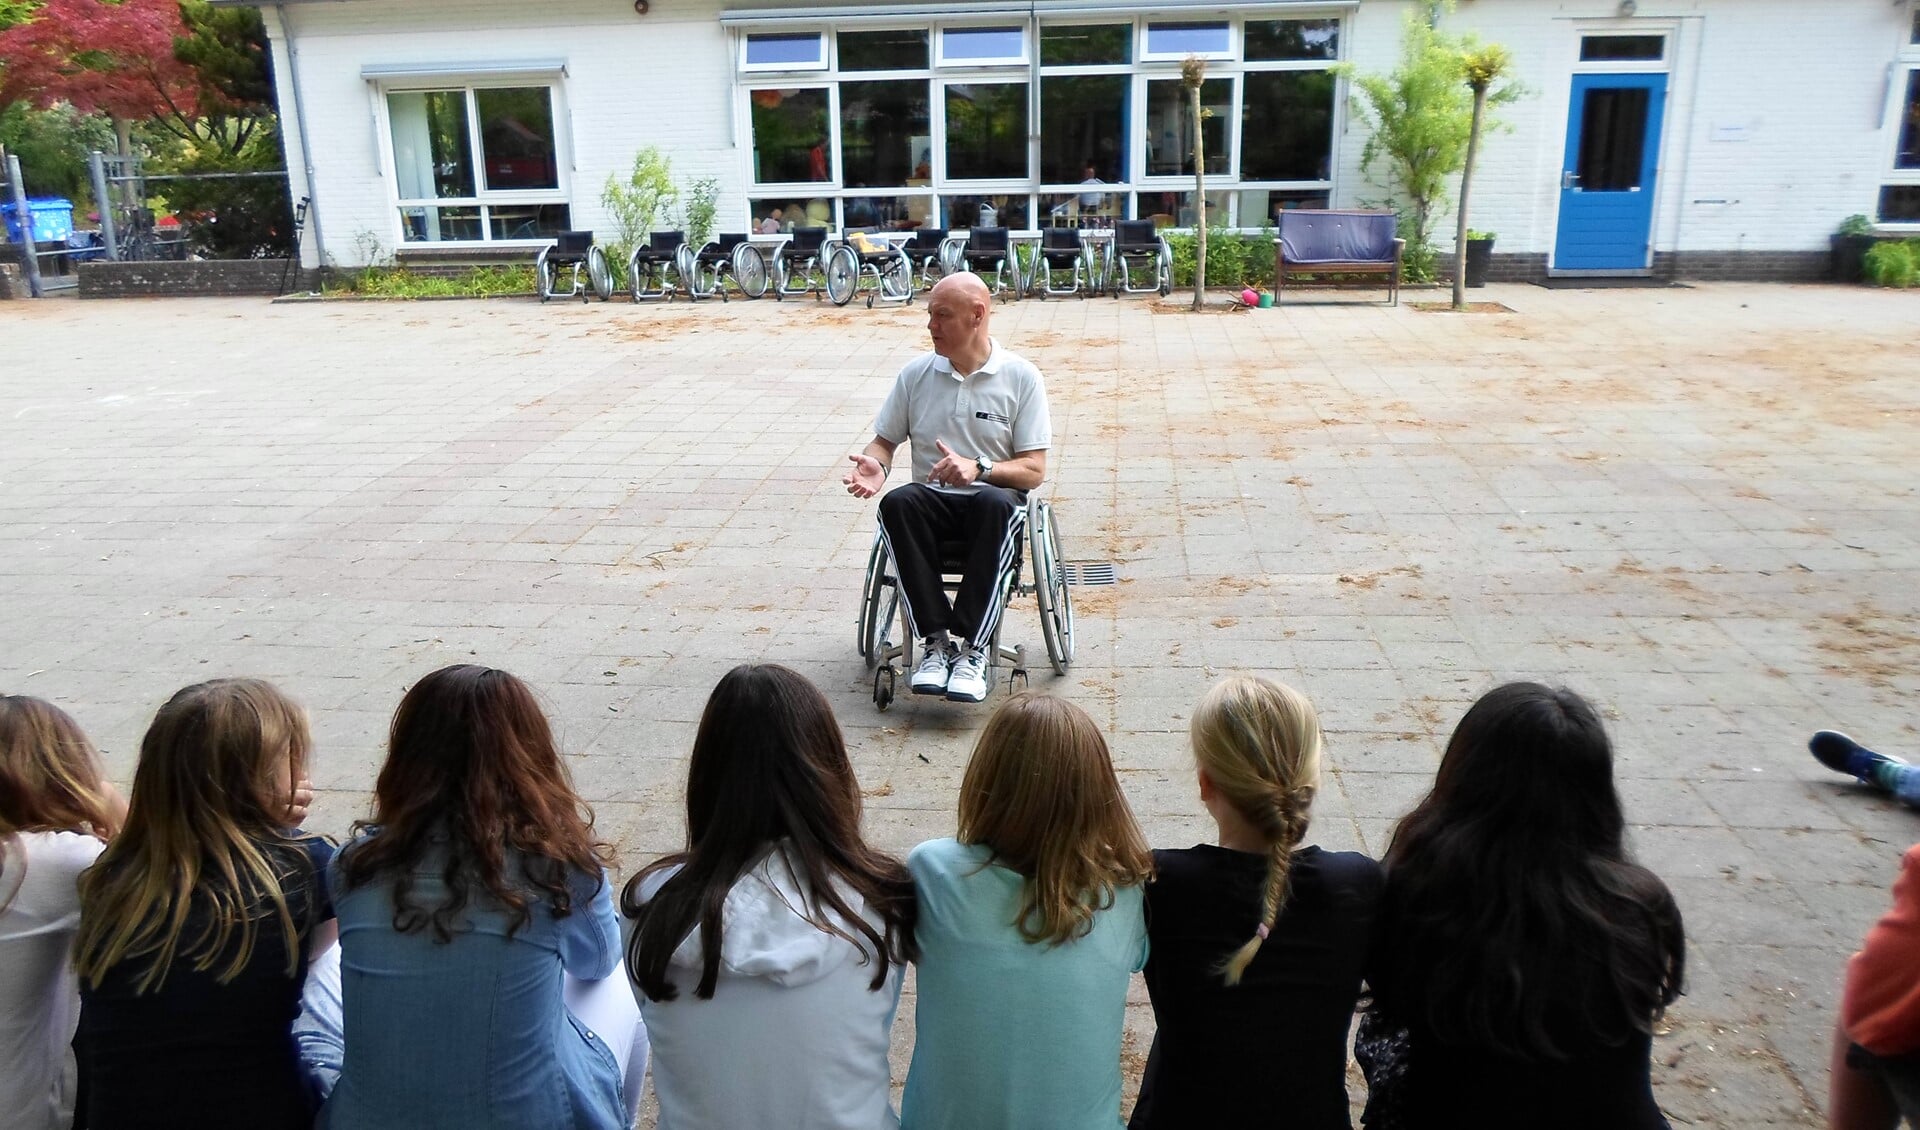 John legt de leerlingen uit waar ze rekening mee moeten houden als ze zelf in de rolstoel zitten.